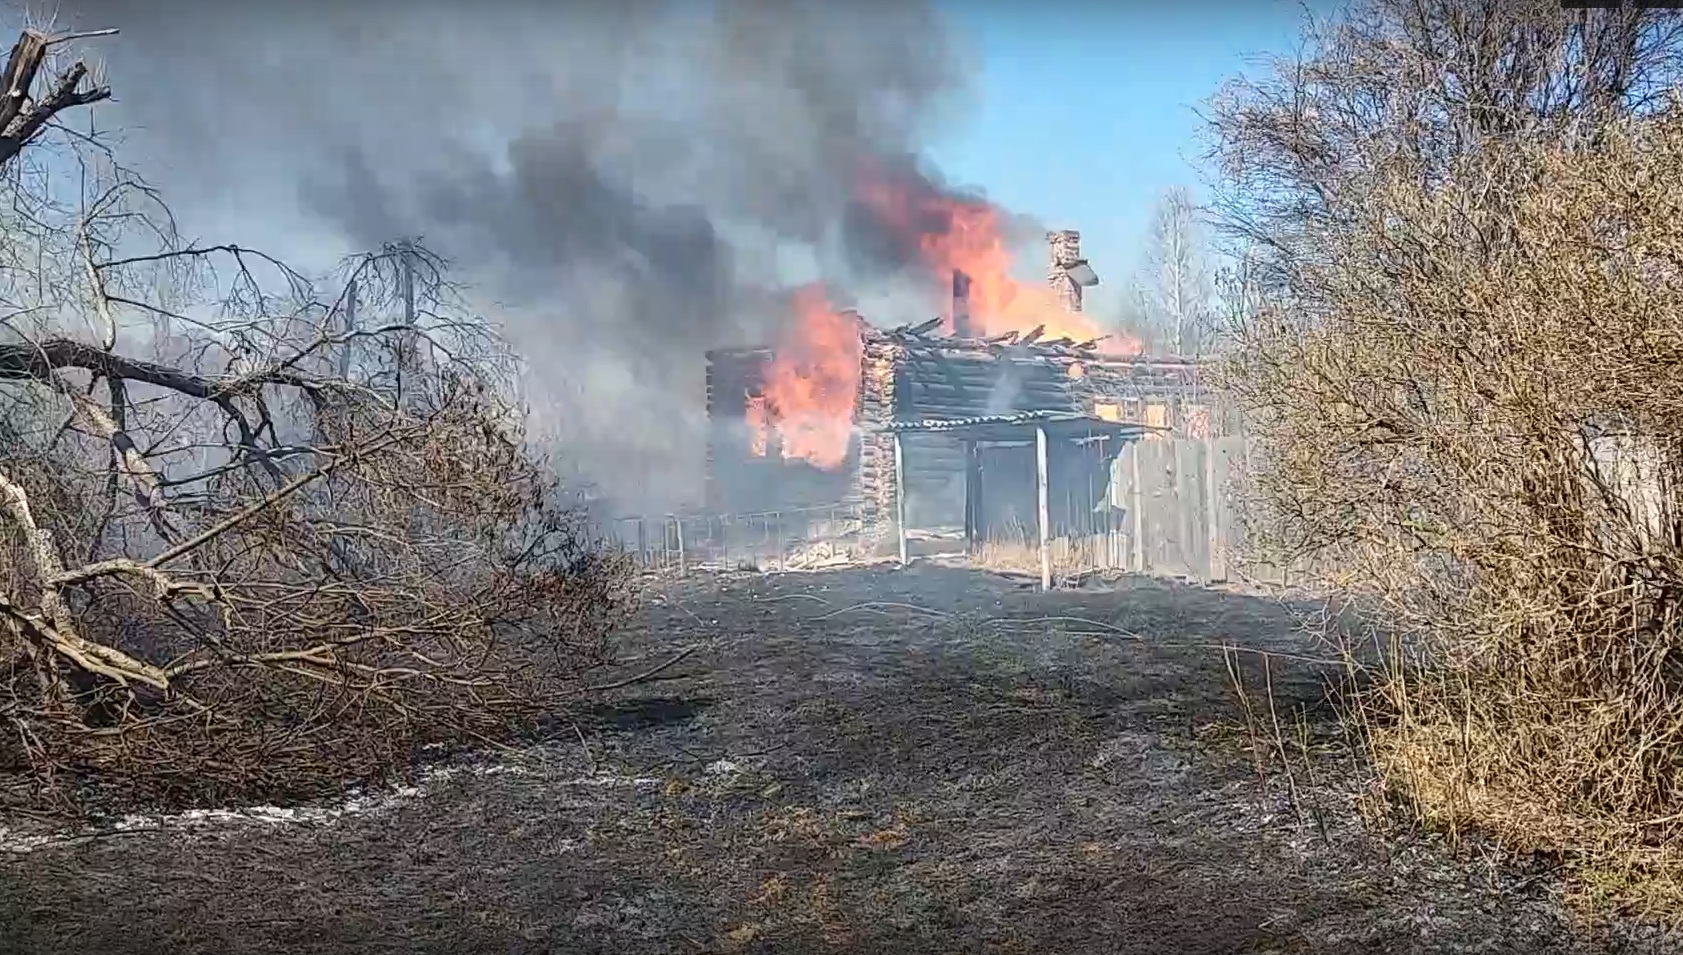 Пал травы привел к пожарам в нескольких населенных пунктах Ивановской области